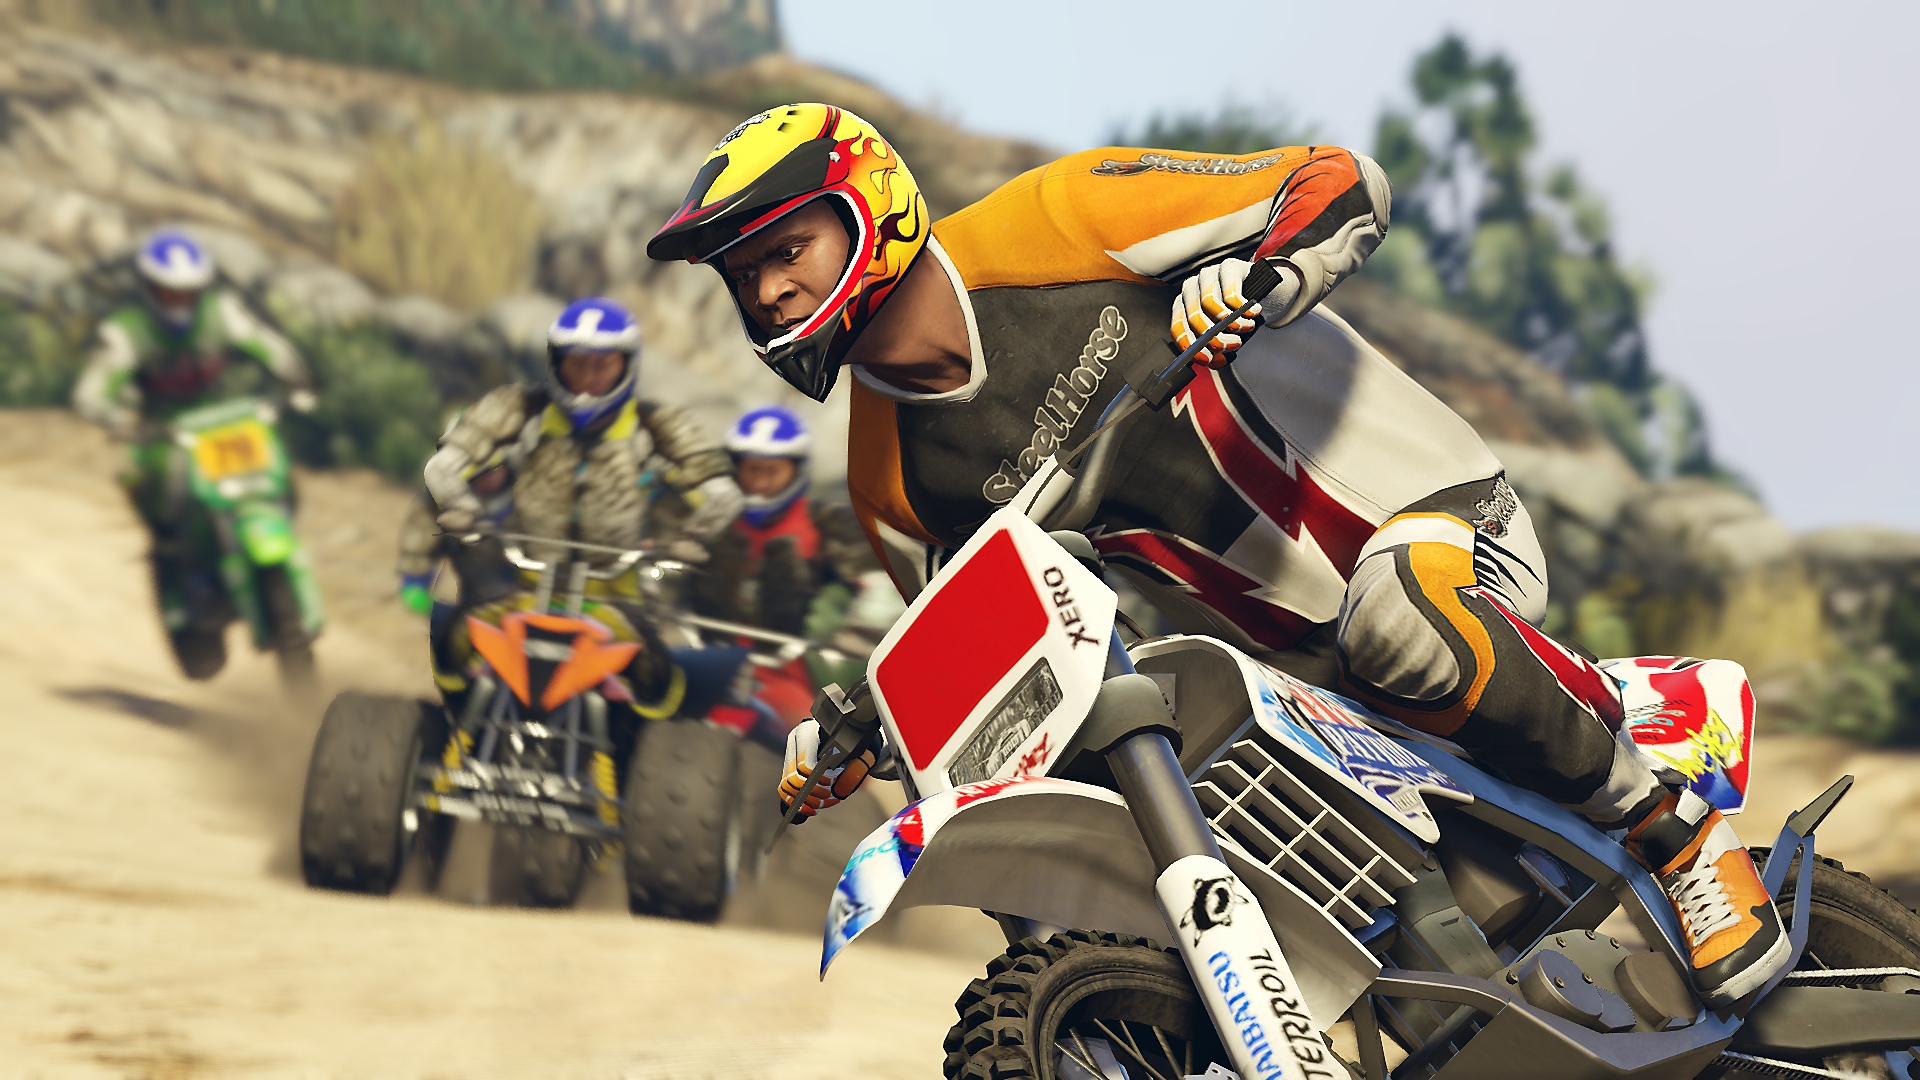 Grand Theft Auto V - Captura de tela mostrando o protagonista, Franklin, pilotando uma moto de motocross em uma corrida contra os adversários em quadriciclos.